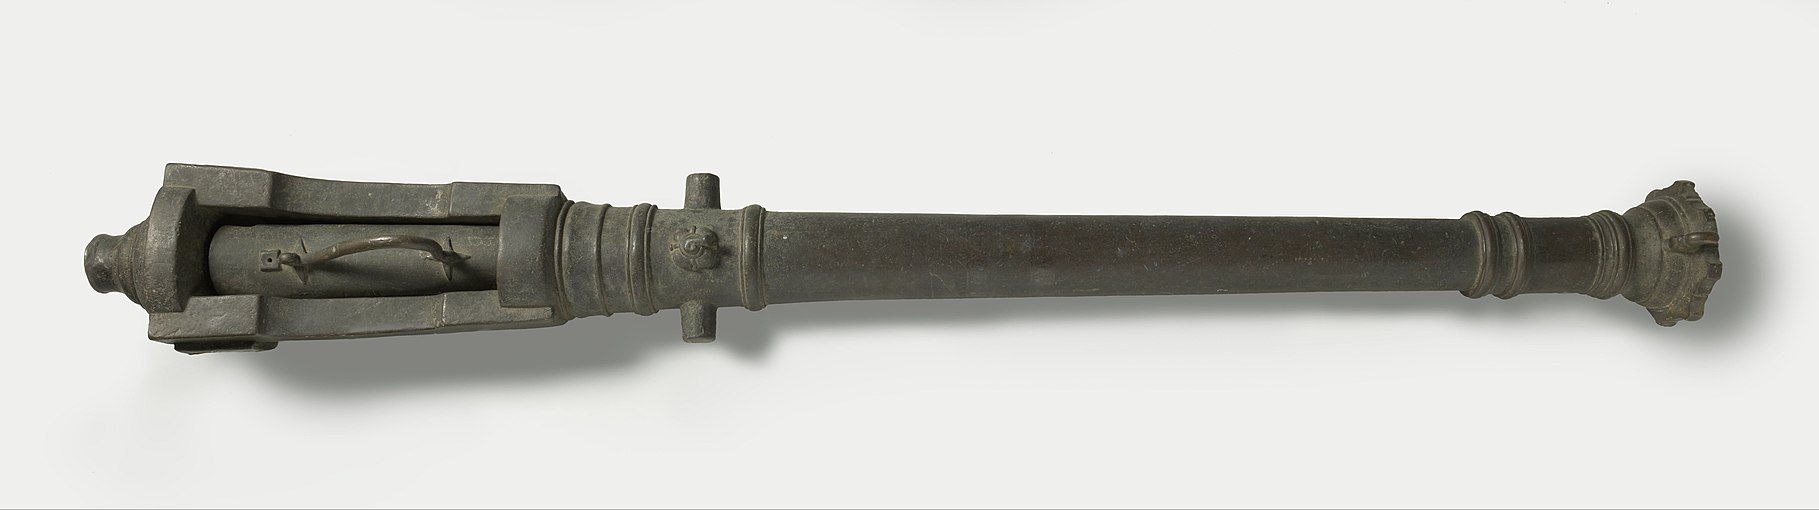 Breech-loading "lilla", Rijksmuseum, ca. 1750 - 1850. Length 180.5 cm, width 21.5 cm, calibre: 4.5 cm, weight: 120.8 kg.